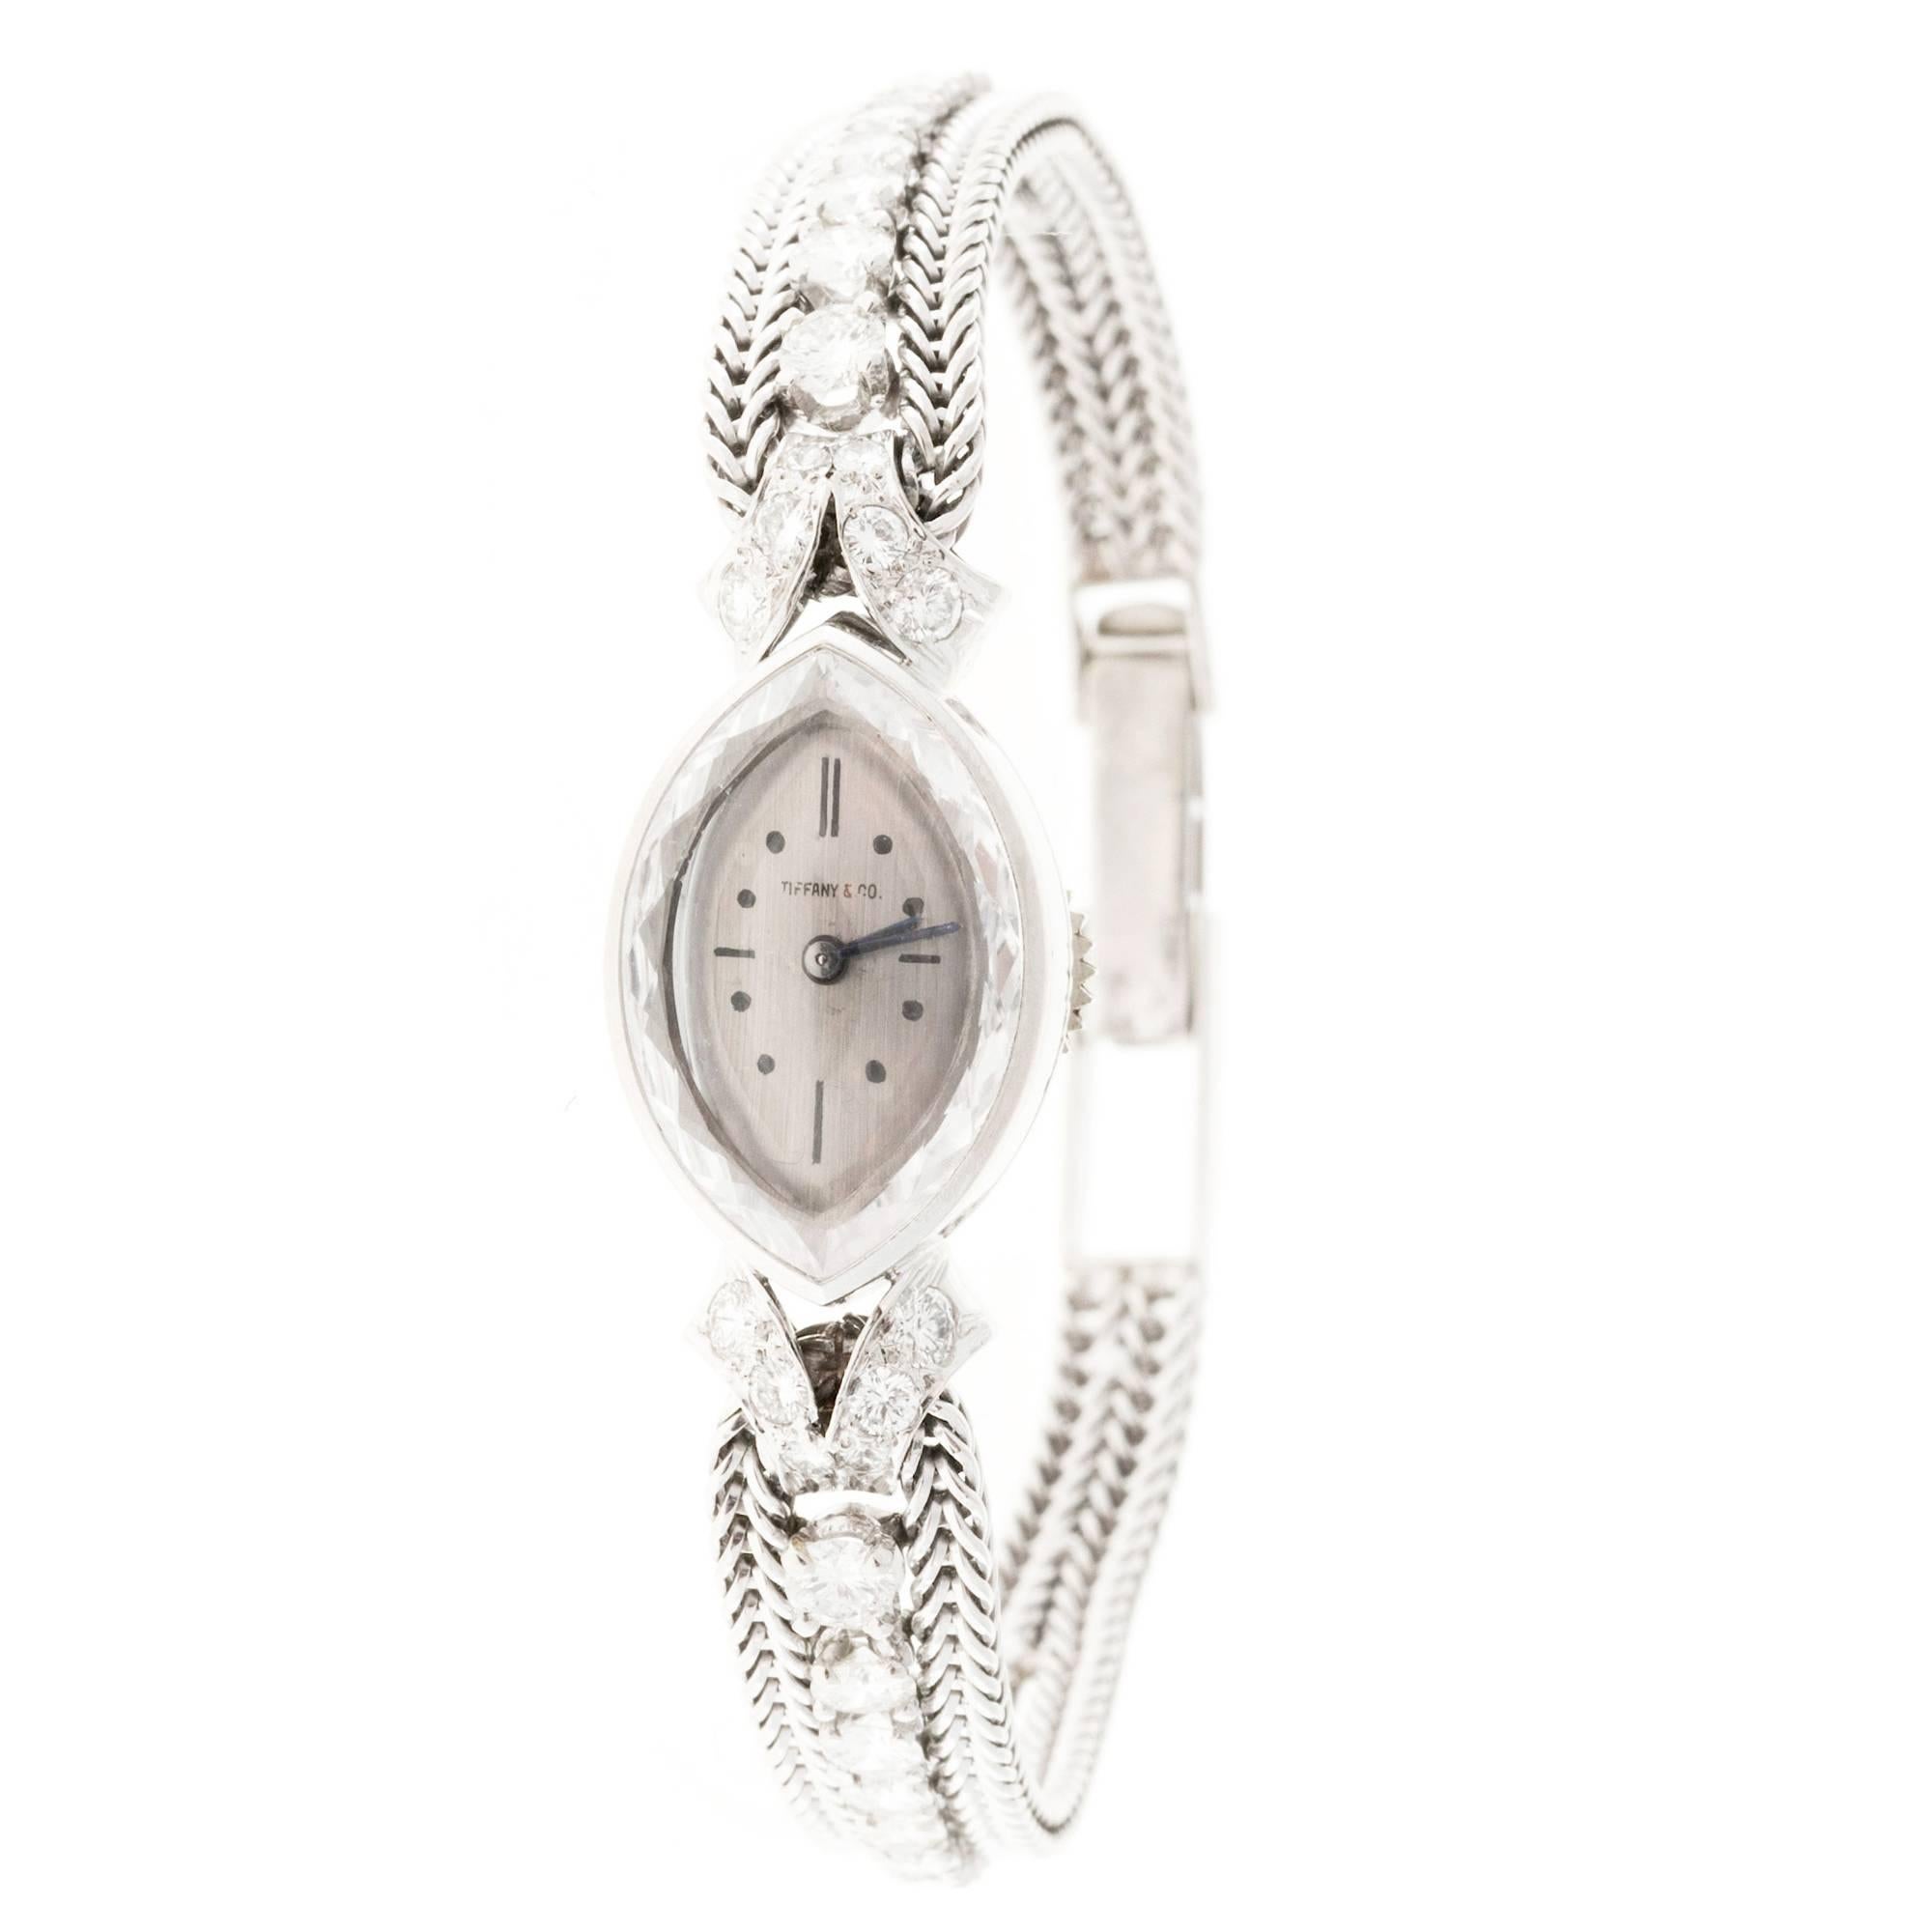 Tiffany & Co. Lady's Diamond Manual Wind Wristwatch